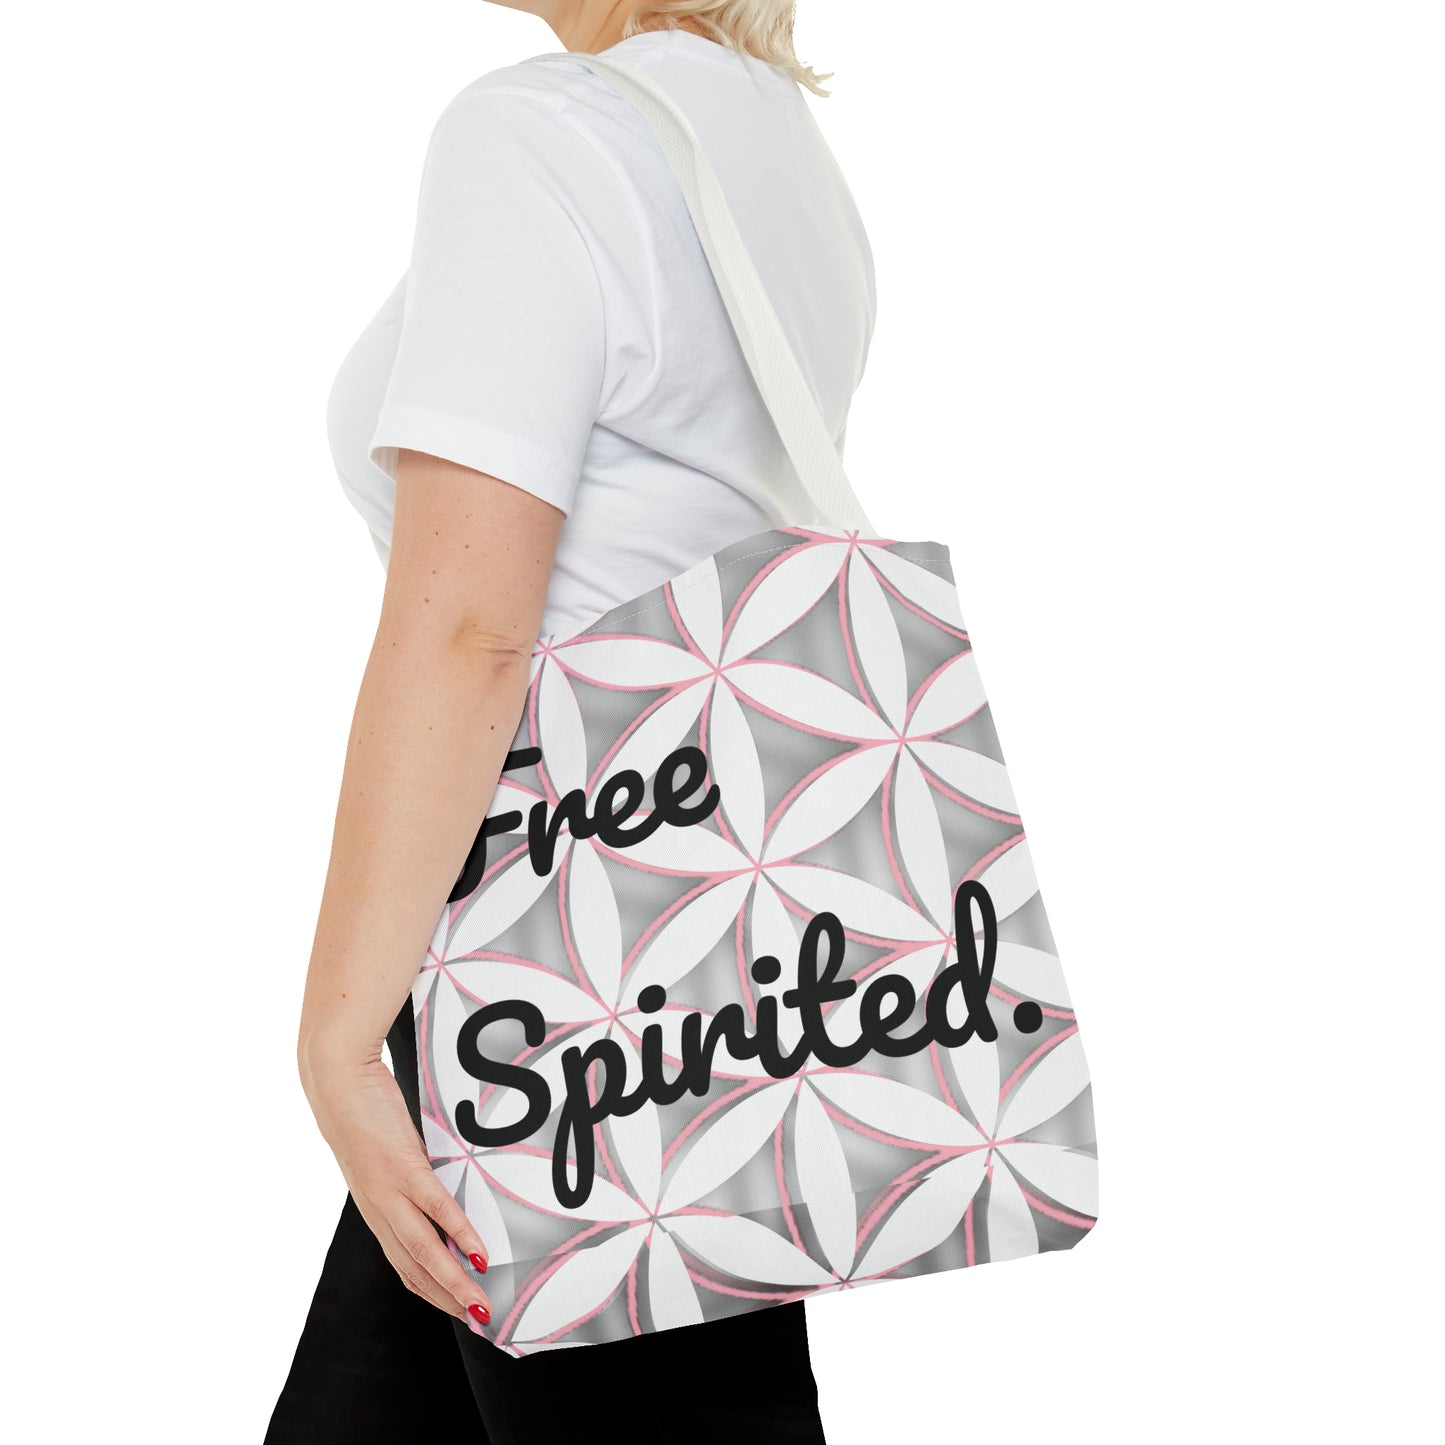 Free Spirited Flower of Life Logo Tote Bag